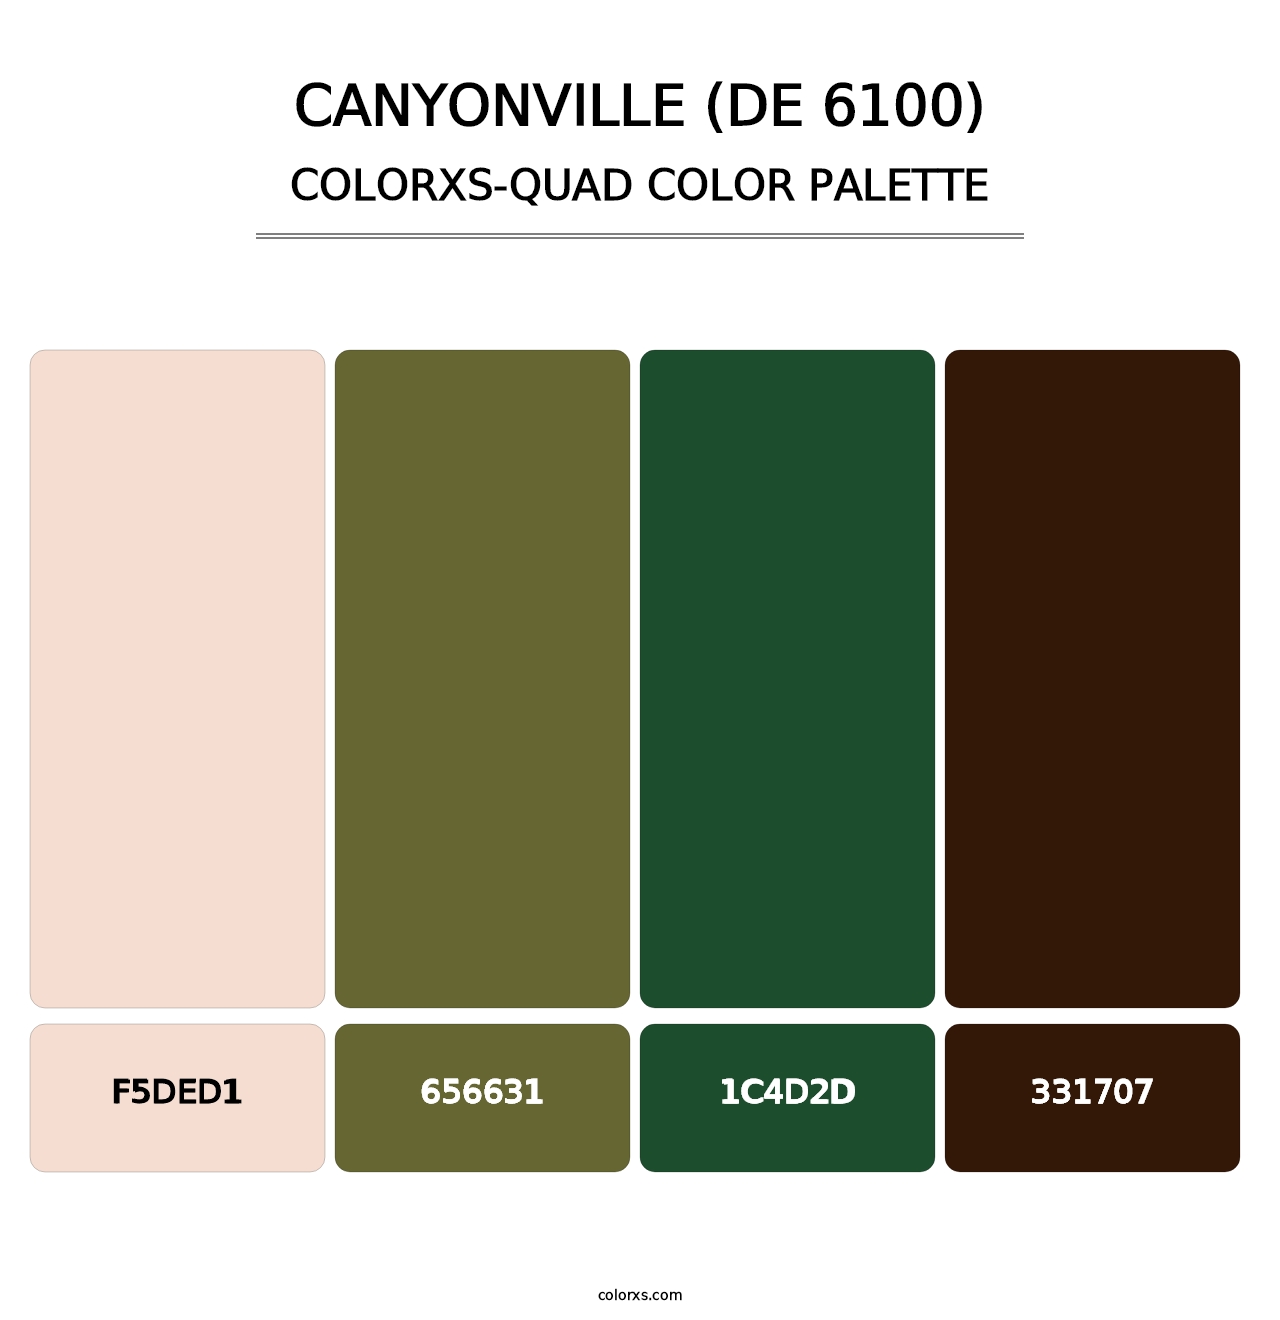 Canyonville (DE 6100) - Colorxs Quad Palette